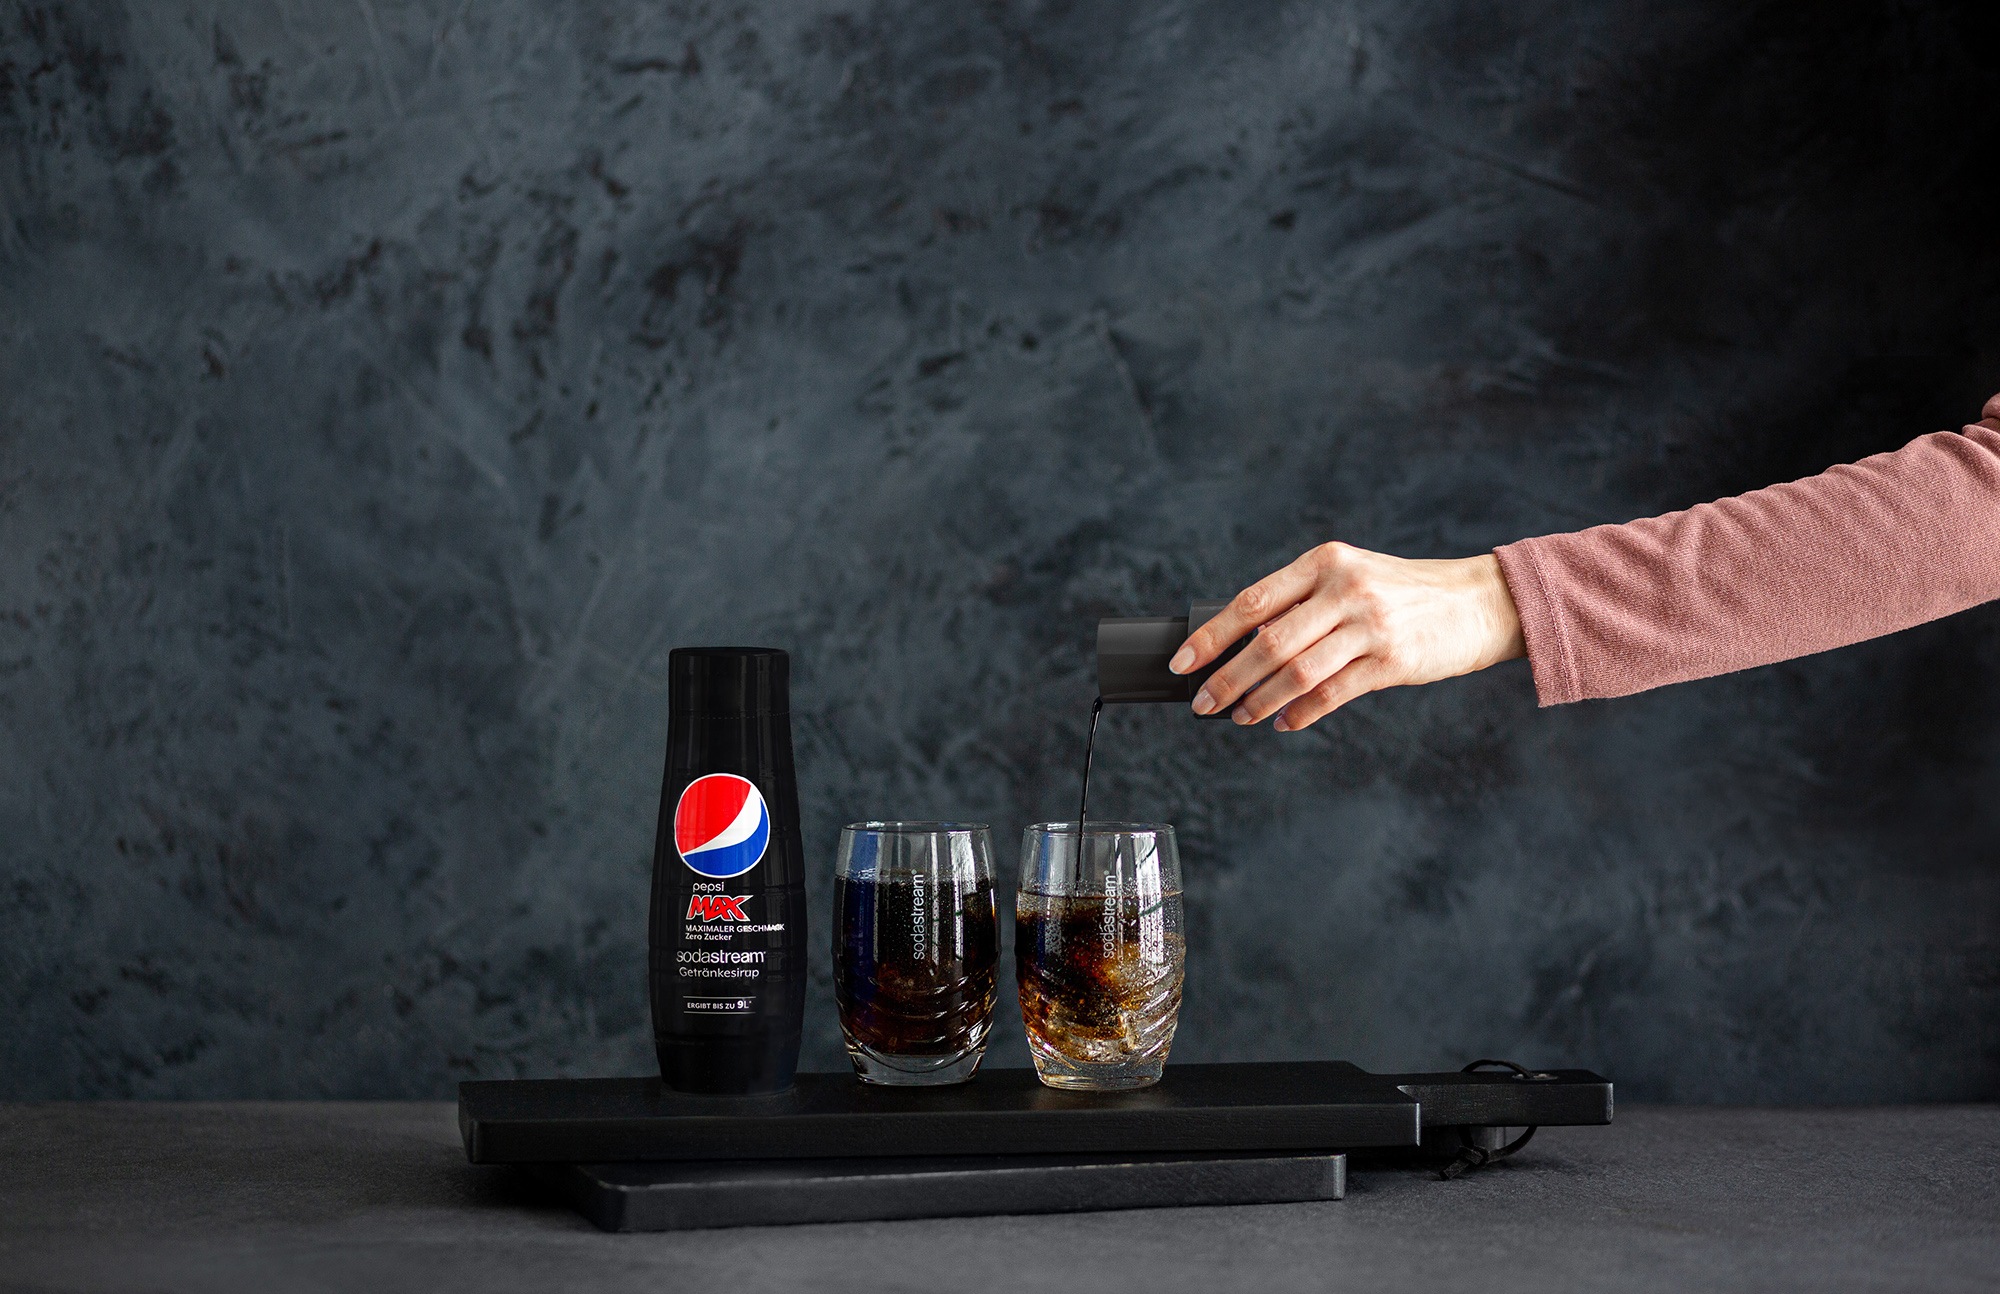 SodaStream Getränke-Sirup, Pepsi & PepsiMax, (4 Flaschen), für bis zu 9 Liter Fertiggetränk